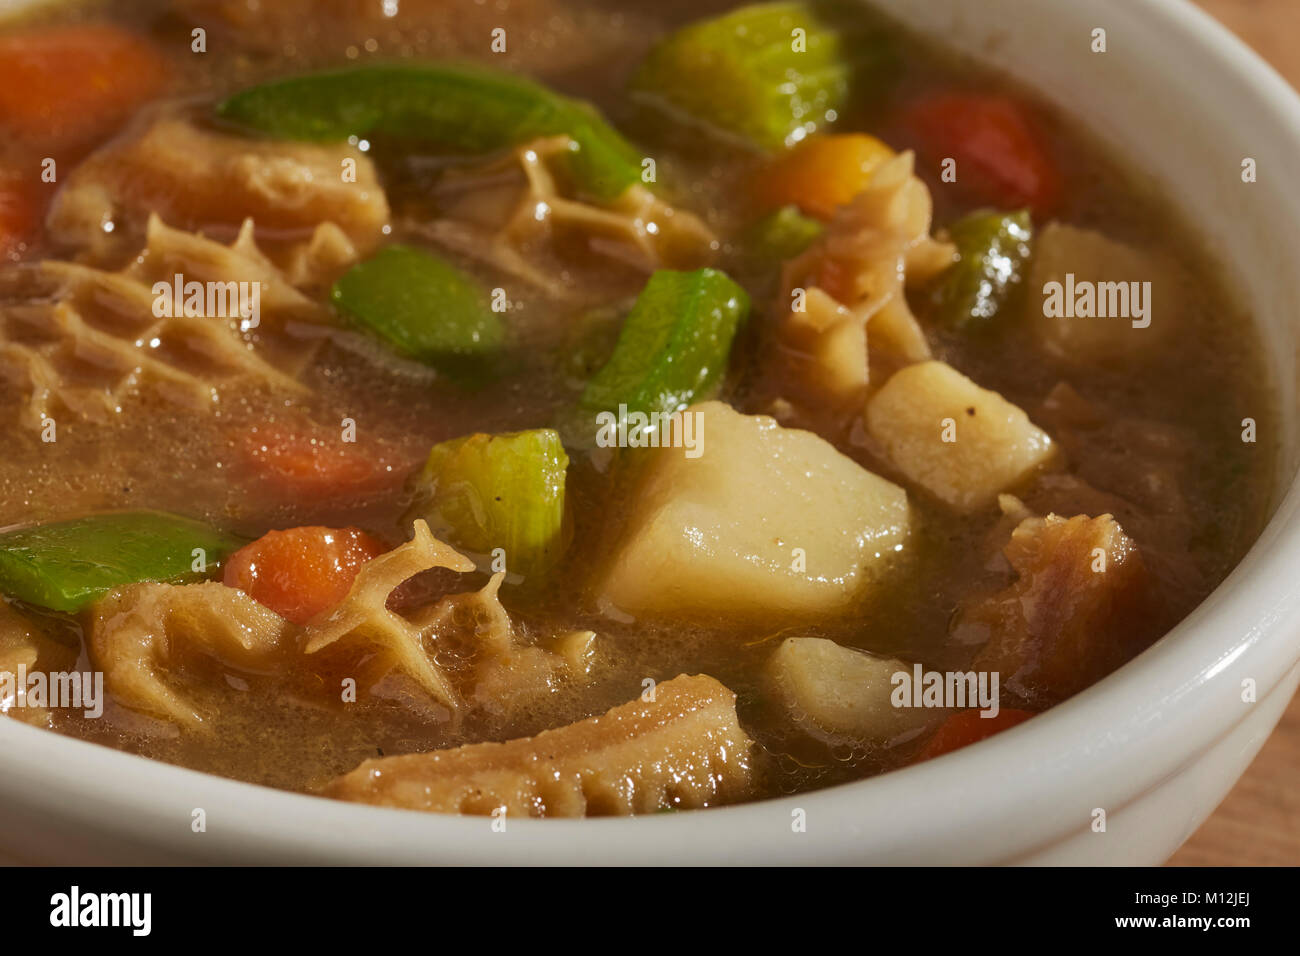 Pfeffer Topf Suppe, einem traditionellen Kutteln Suppe aus Pennsylvania  Stockfotografie - Alamy